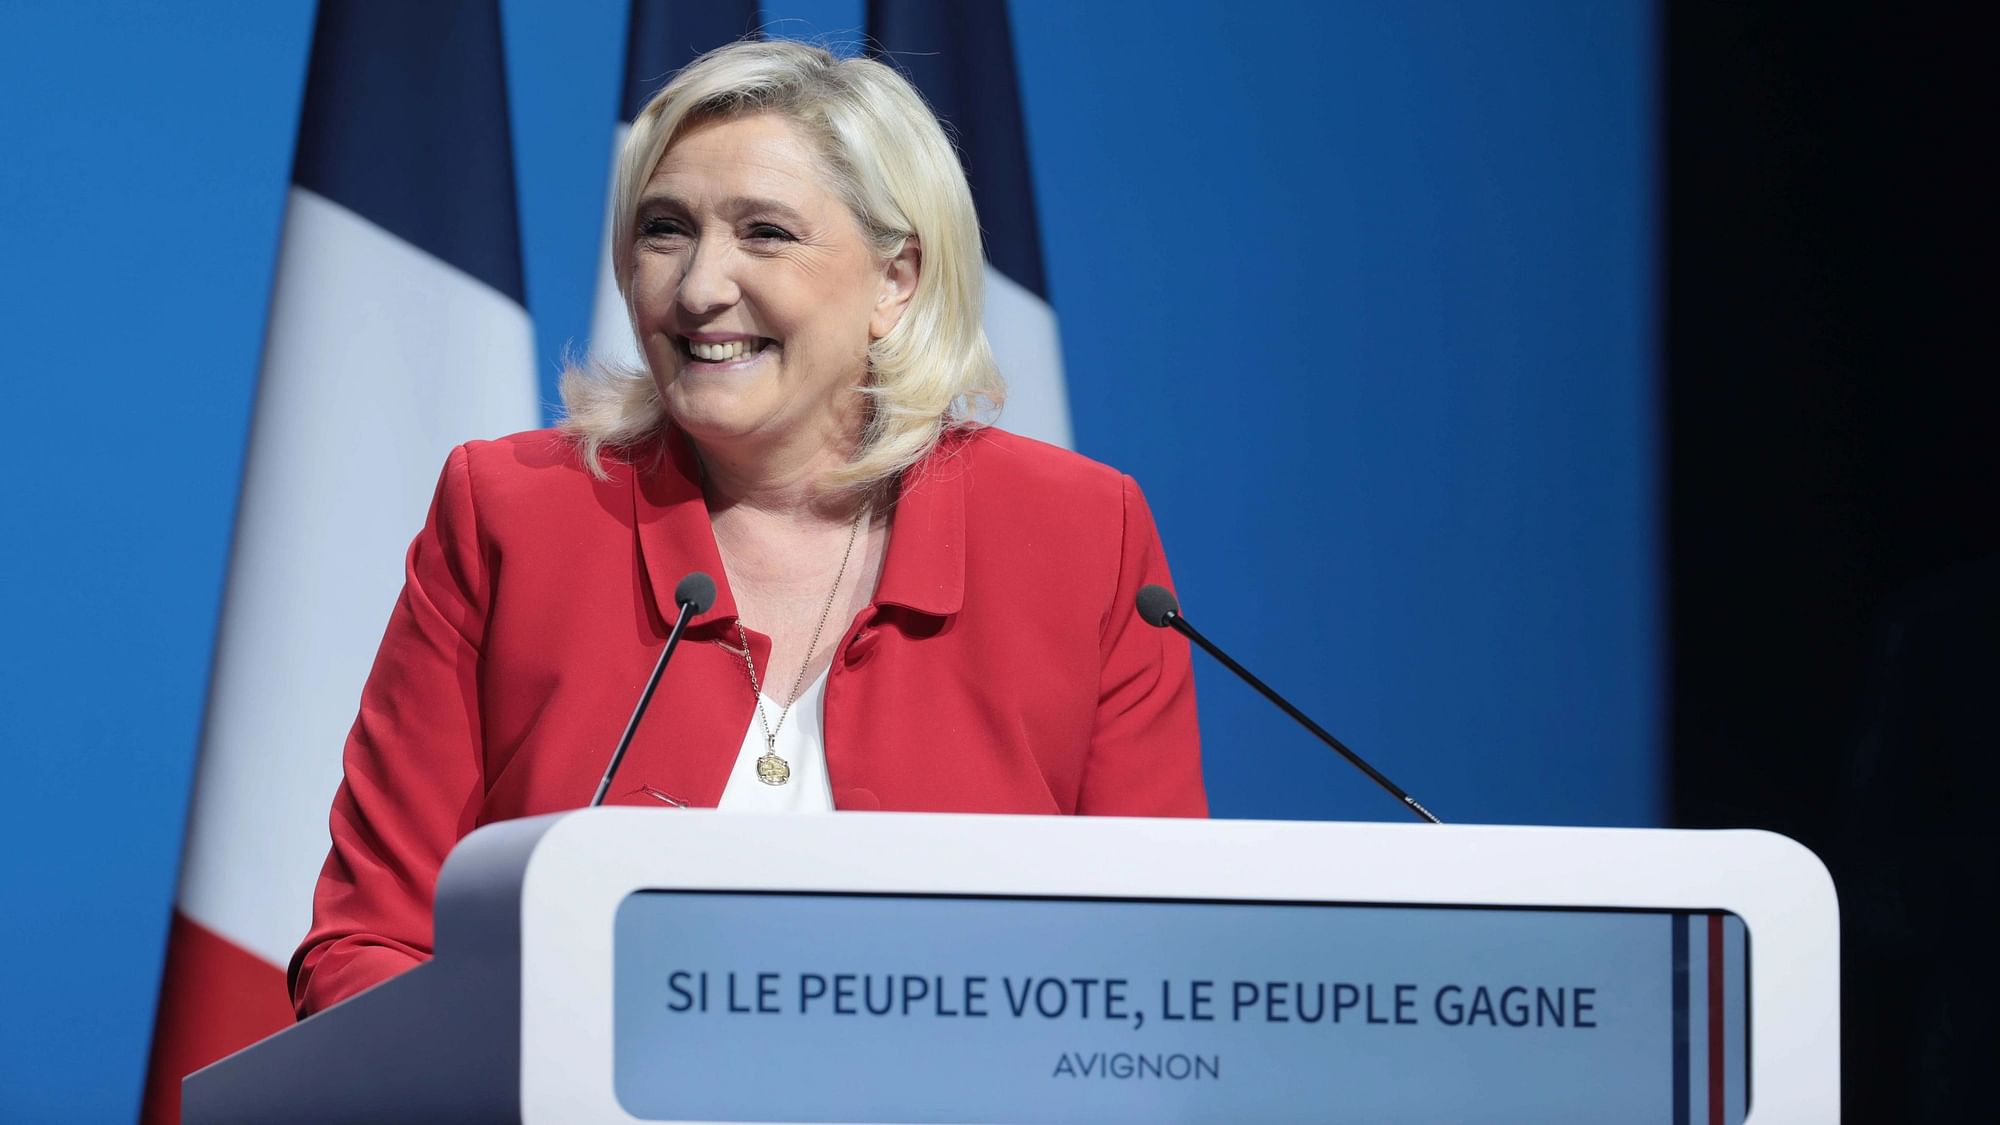 <div class="paragraphs"><p>Marine Le Pen.&nbsp;</p></div>